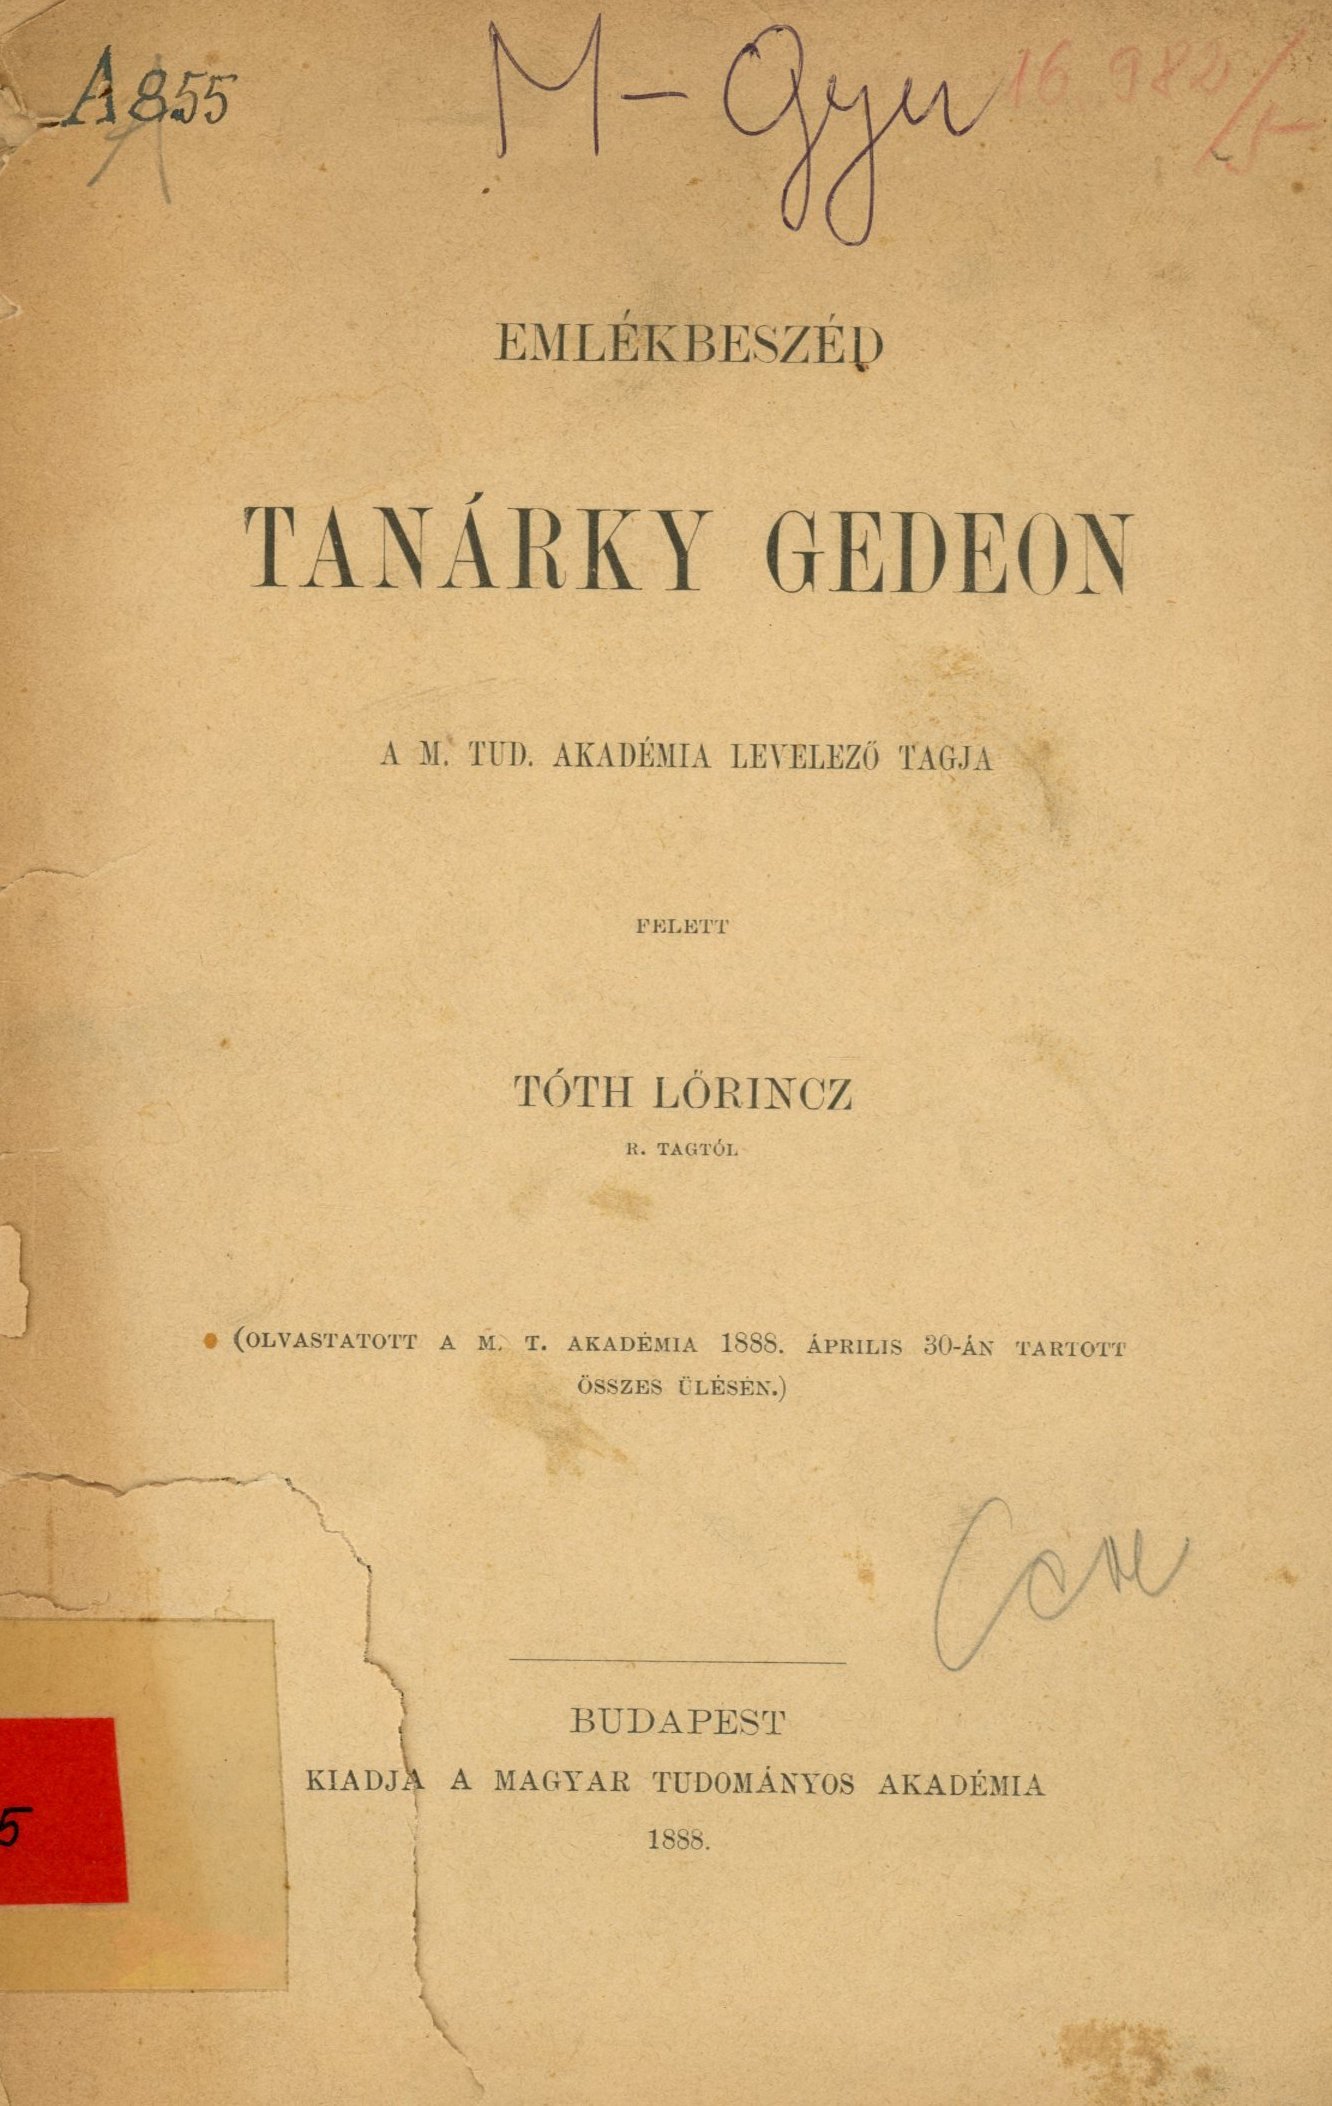 Emlékbeszéd Tanárky Gedeon (Erkel Ferenc Területi Múzeum, Gyula CC BY-NC-SA)